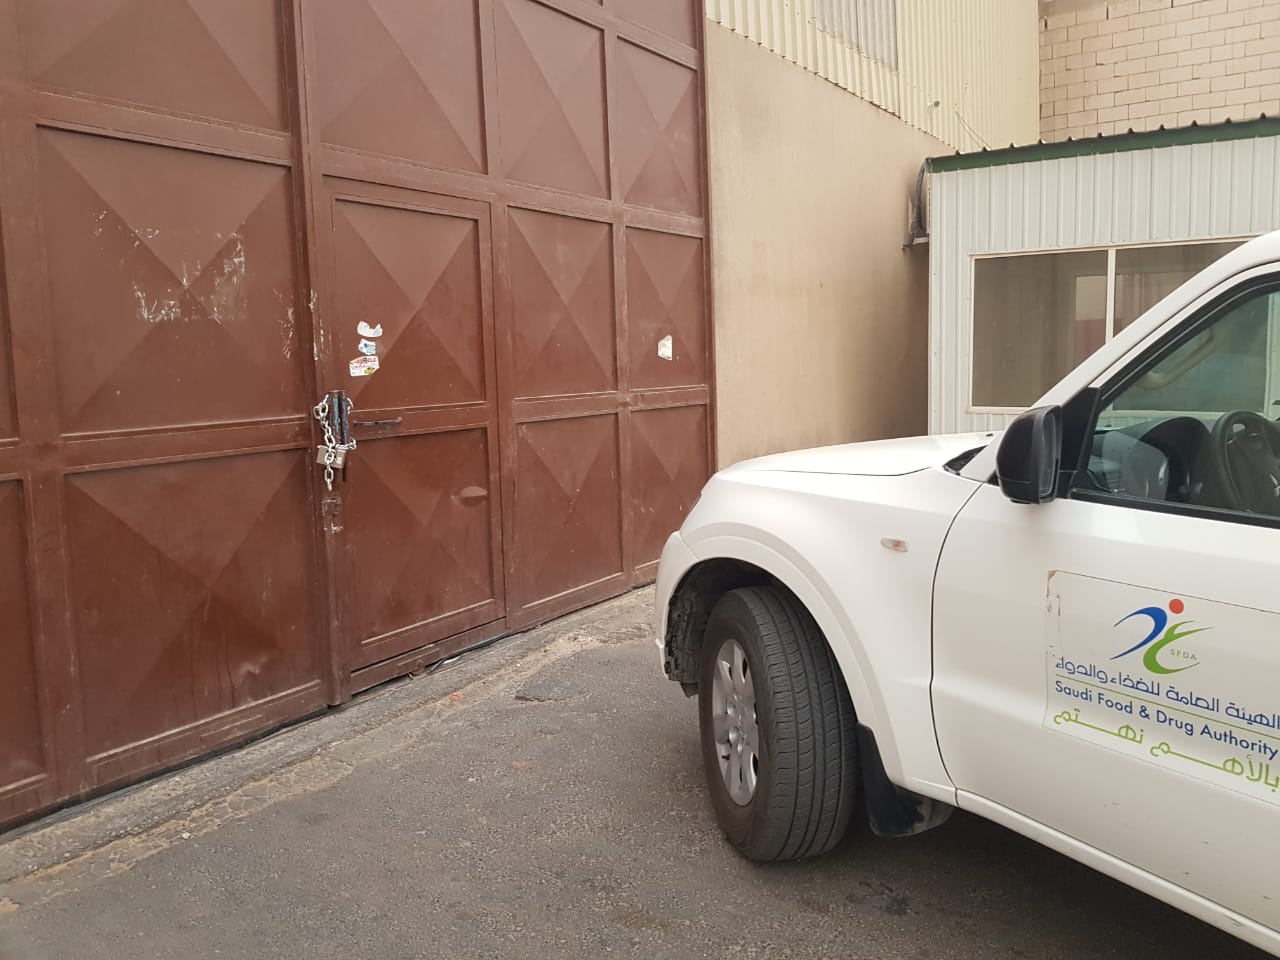 الغذاء والدواء تعيد إغلاق مصنع مياه في الرياض زاول النشاط دون موافقتها